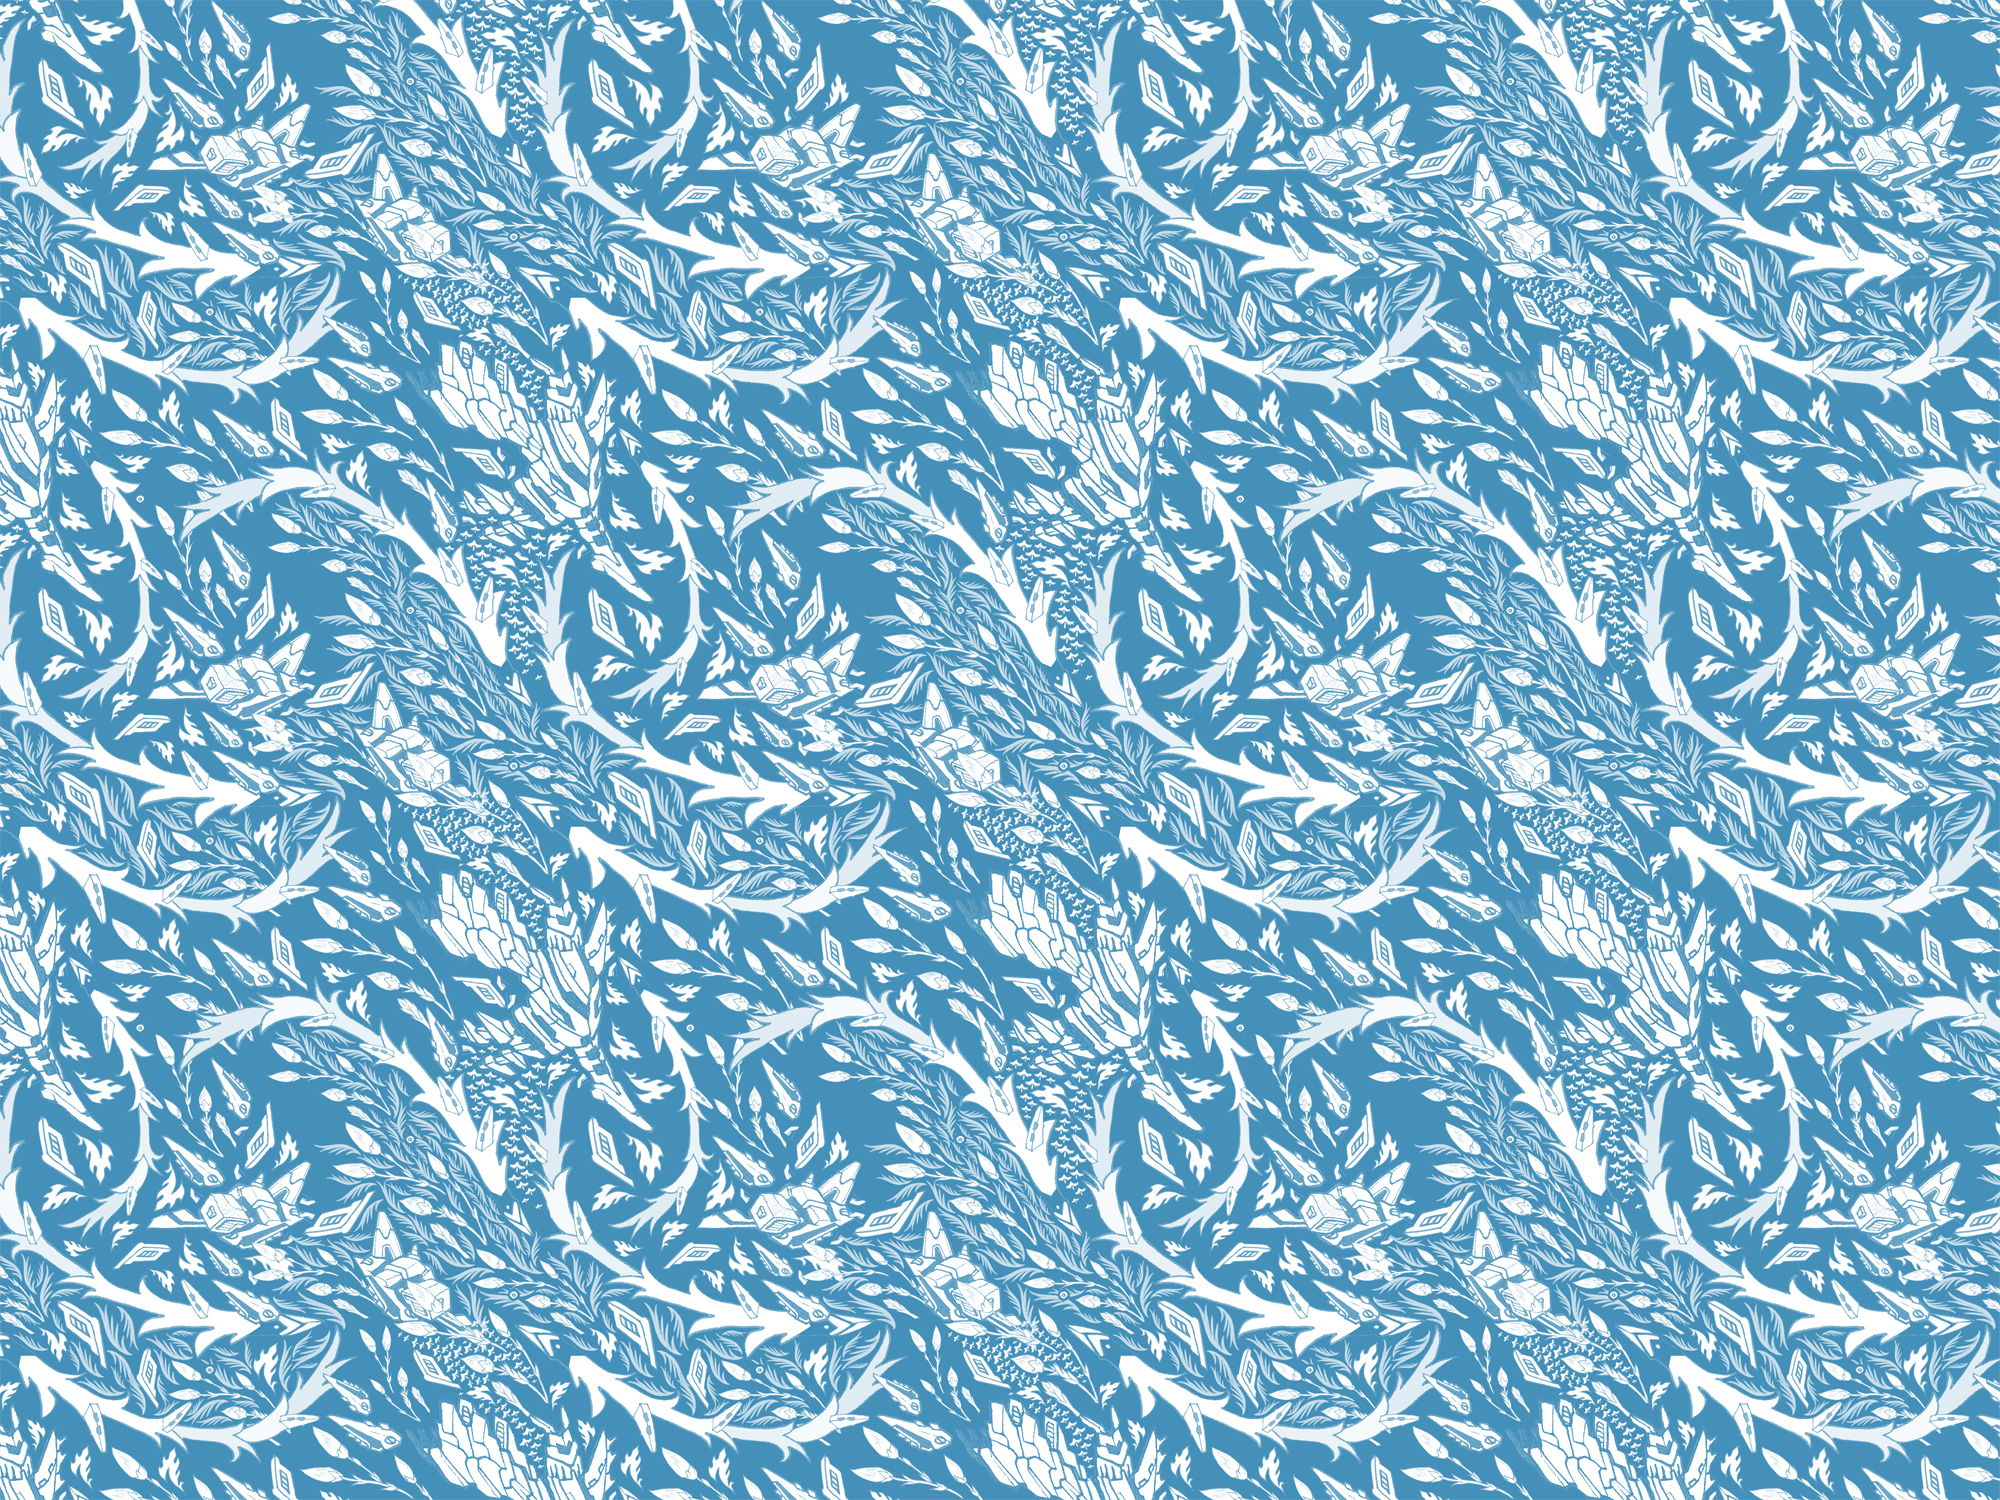 벽지 패턴 디자인,무늬,아쿠아,푸른,터키 옥,디자인